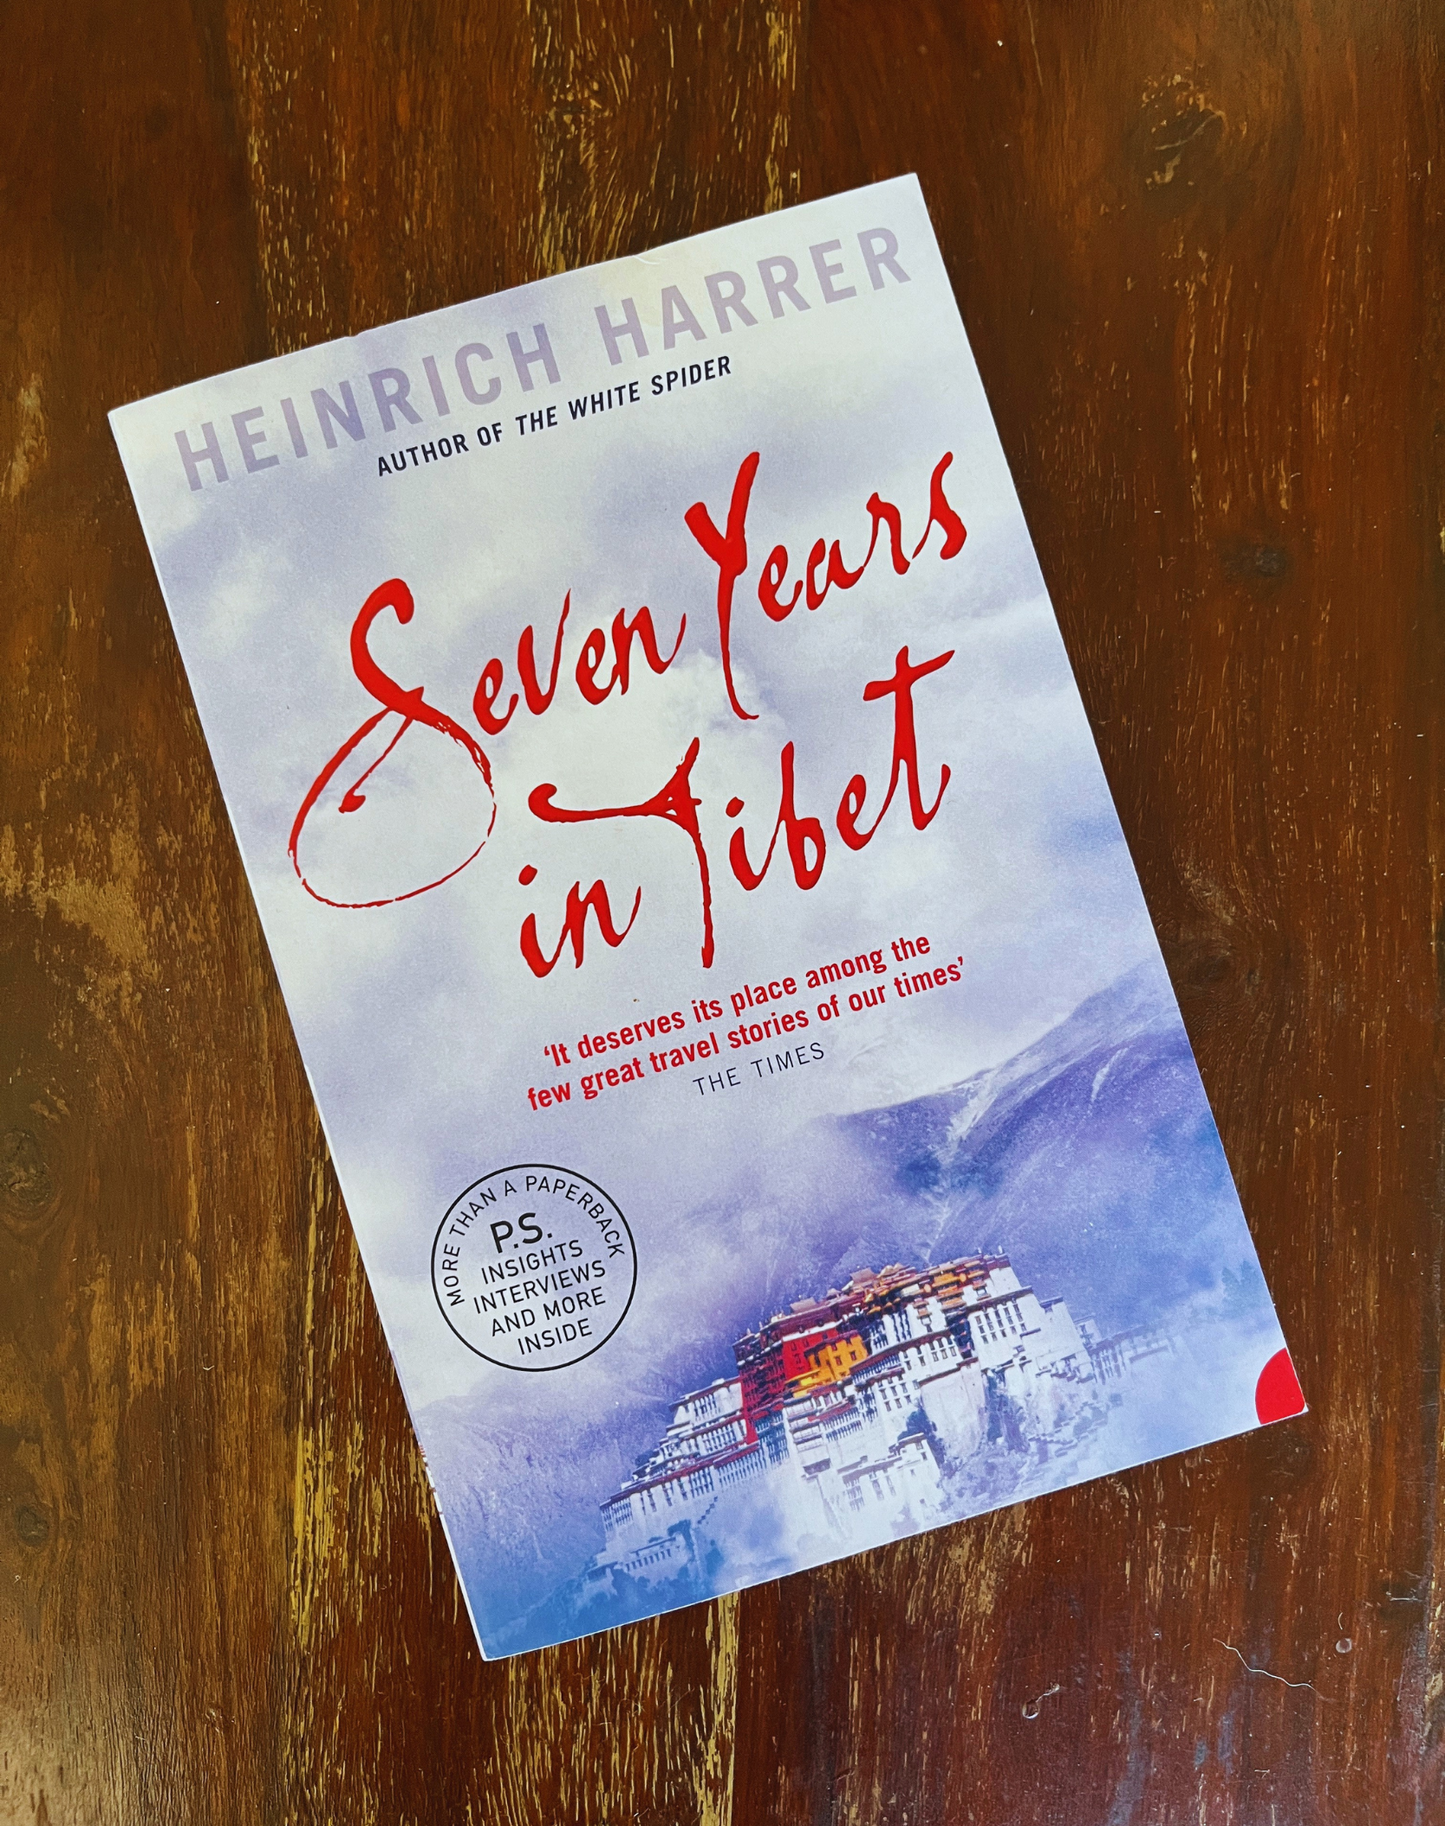 Seven Years in Tibet - Heinrich Harrer